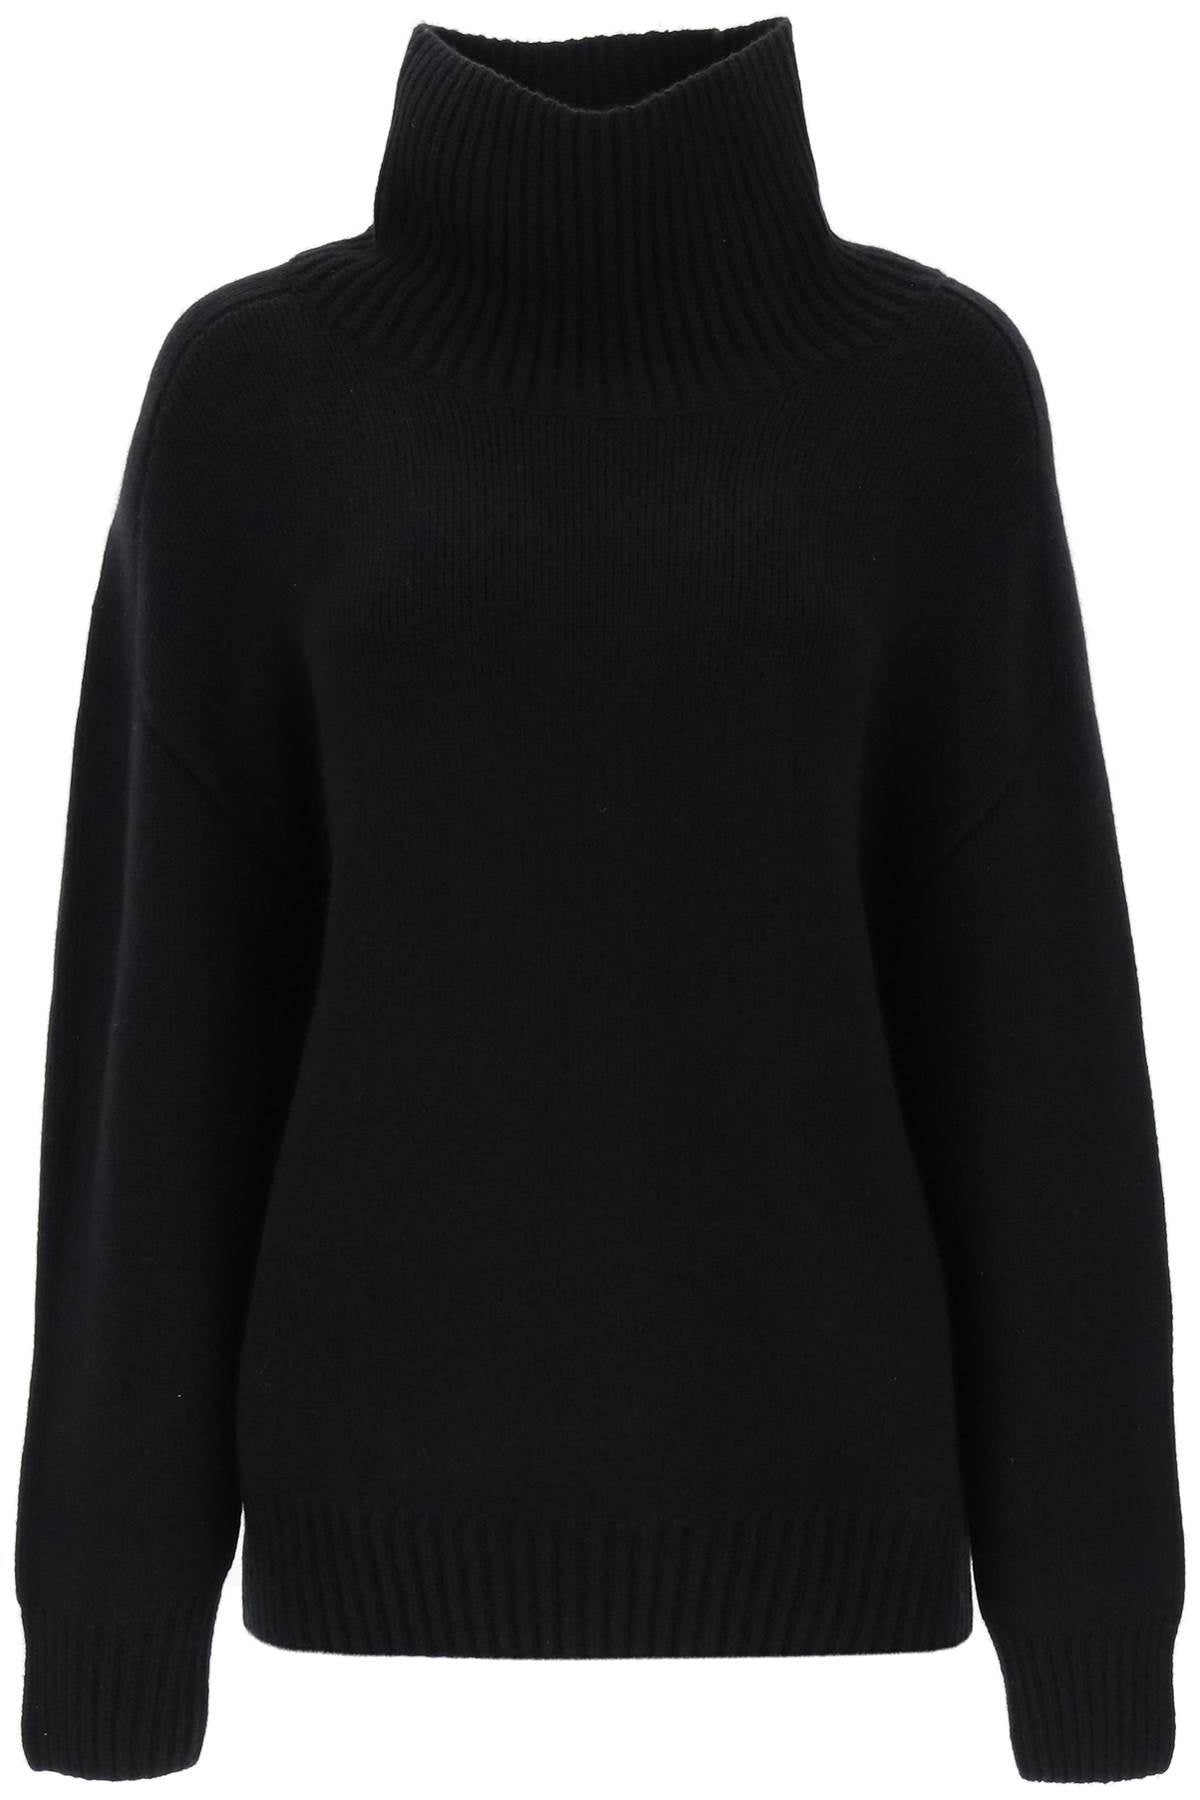 KHAITE Black Oversized Funnel-Neck Sweater for Women